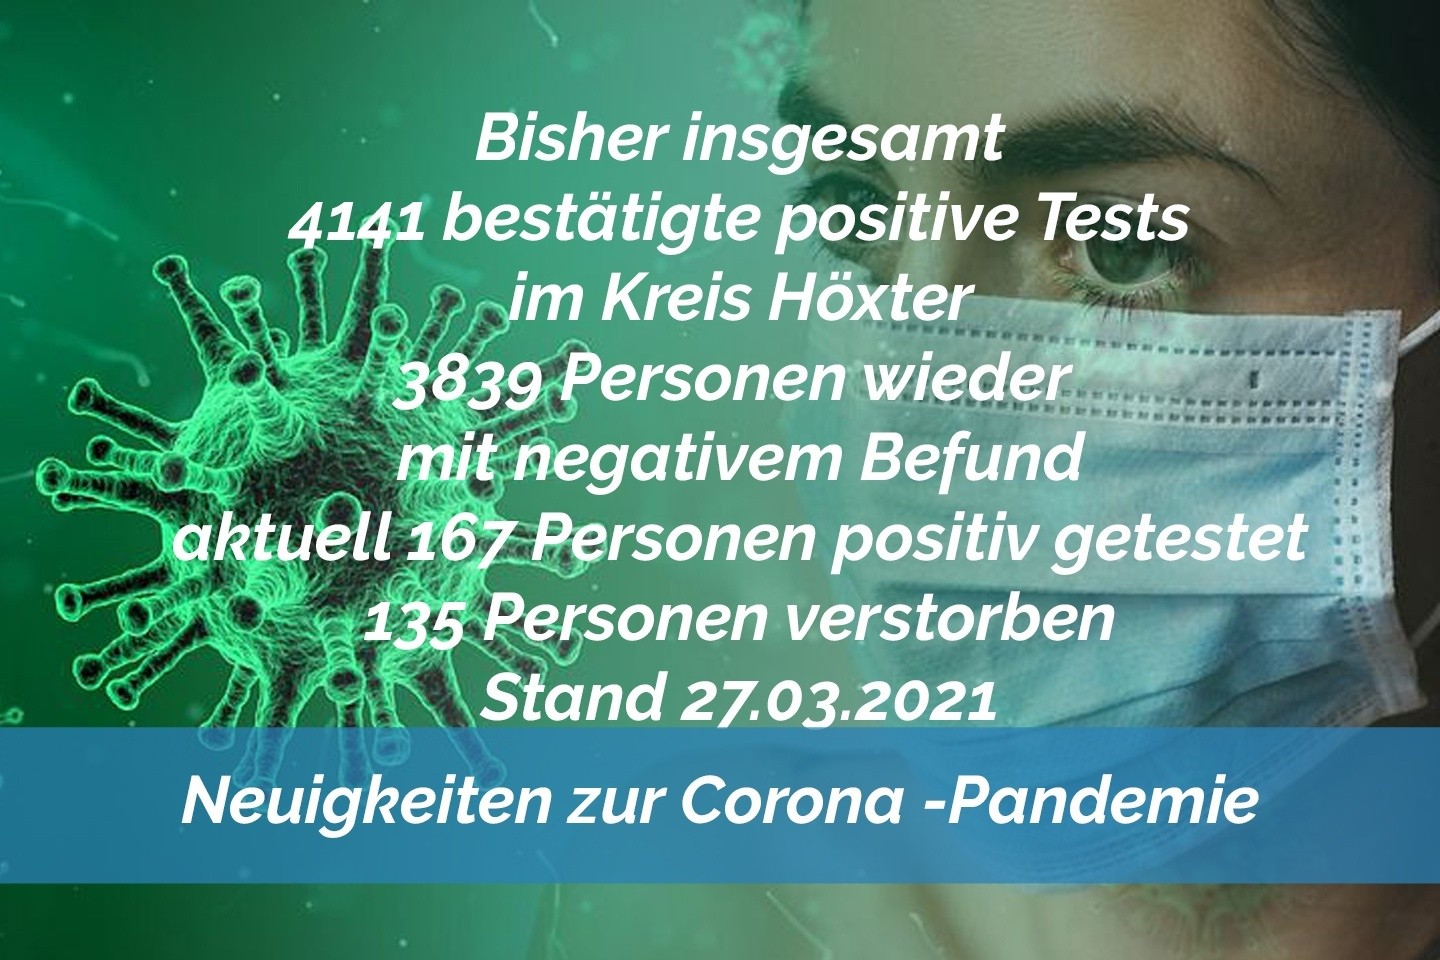 Update 27. März: 11 weitere amtlich positive Tests im Kreis Höxter